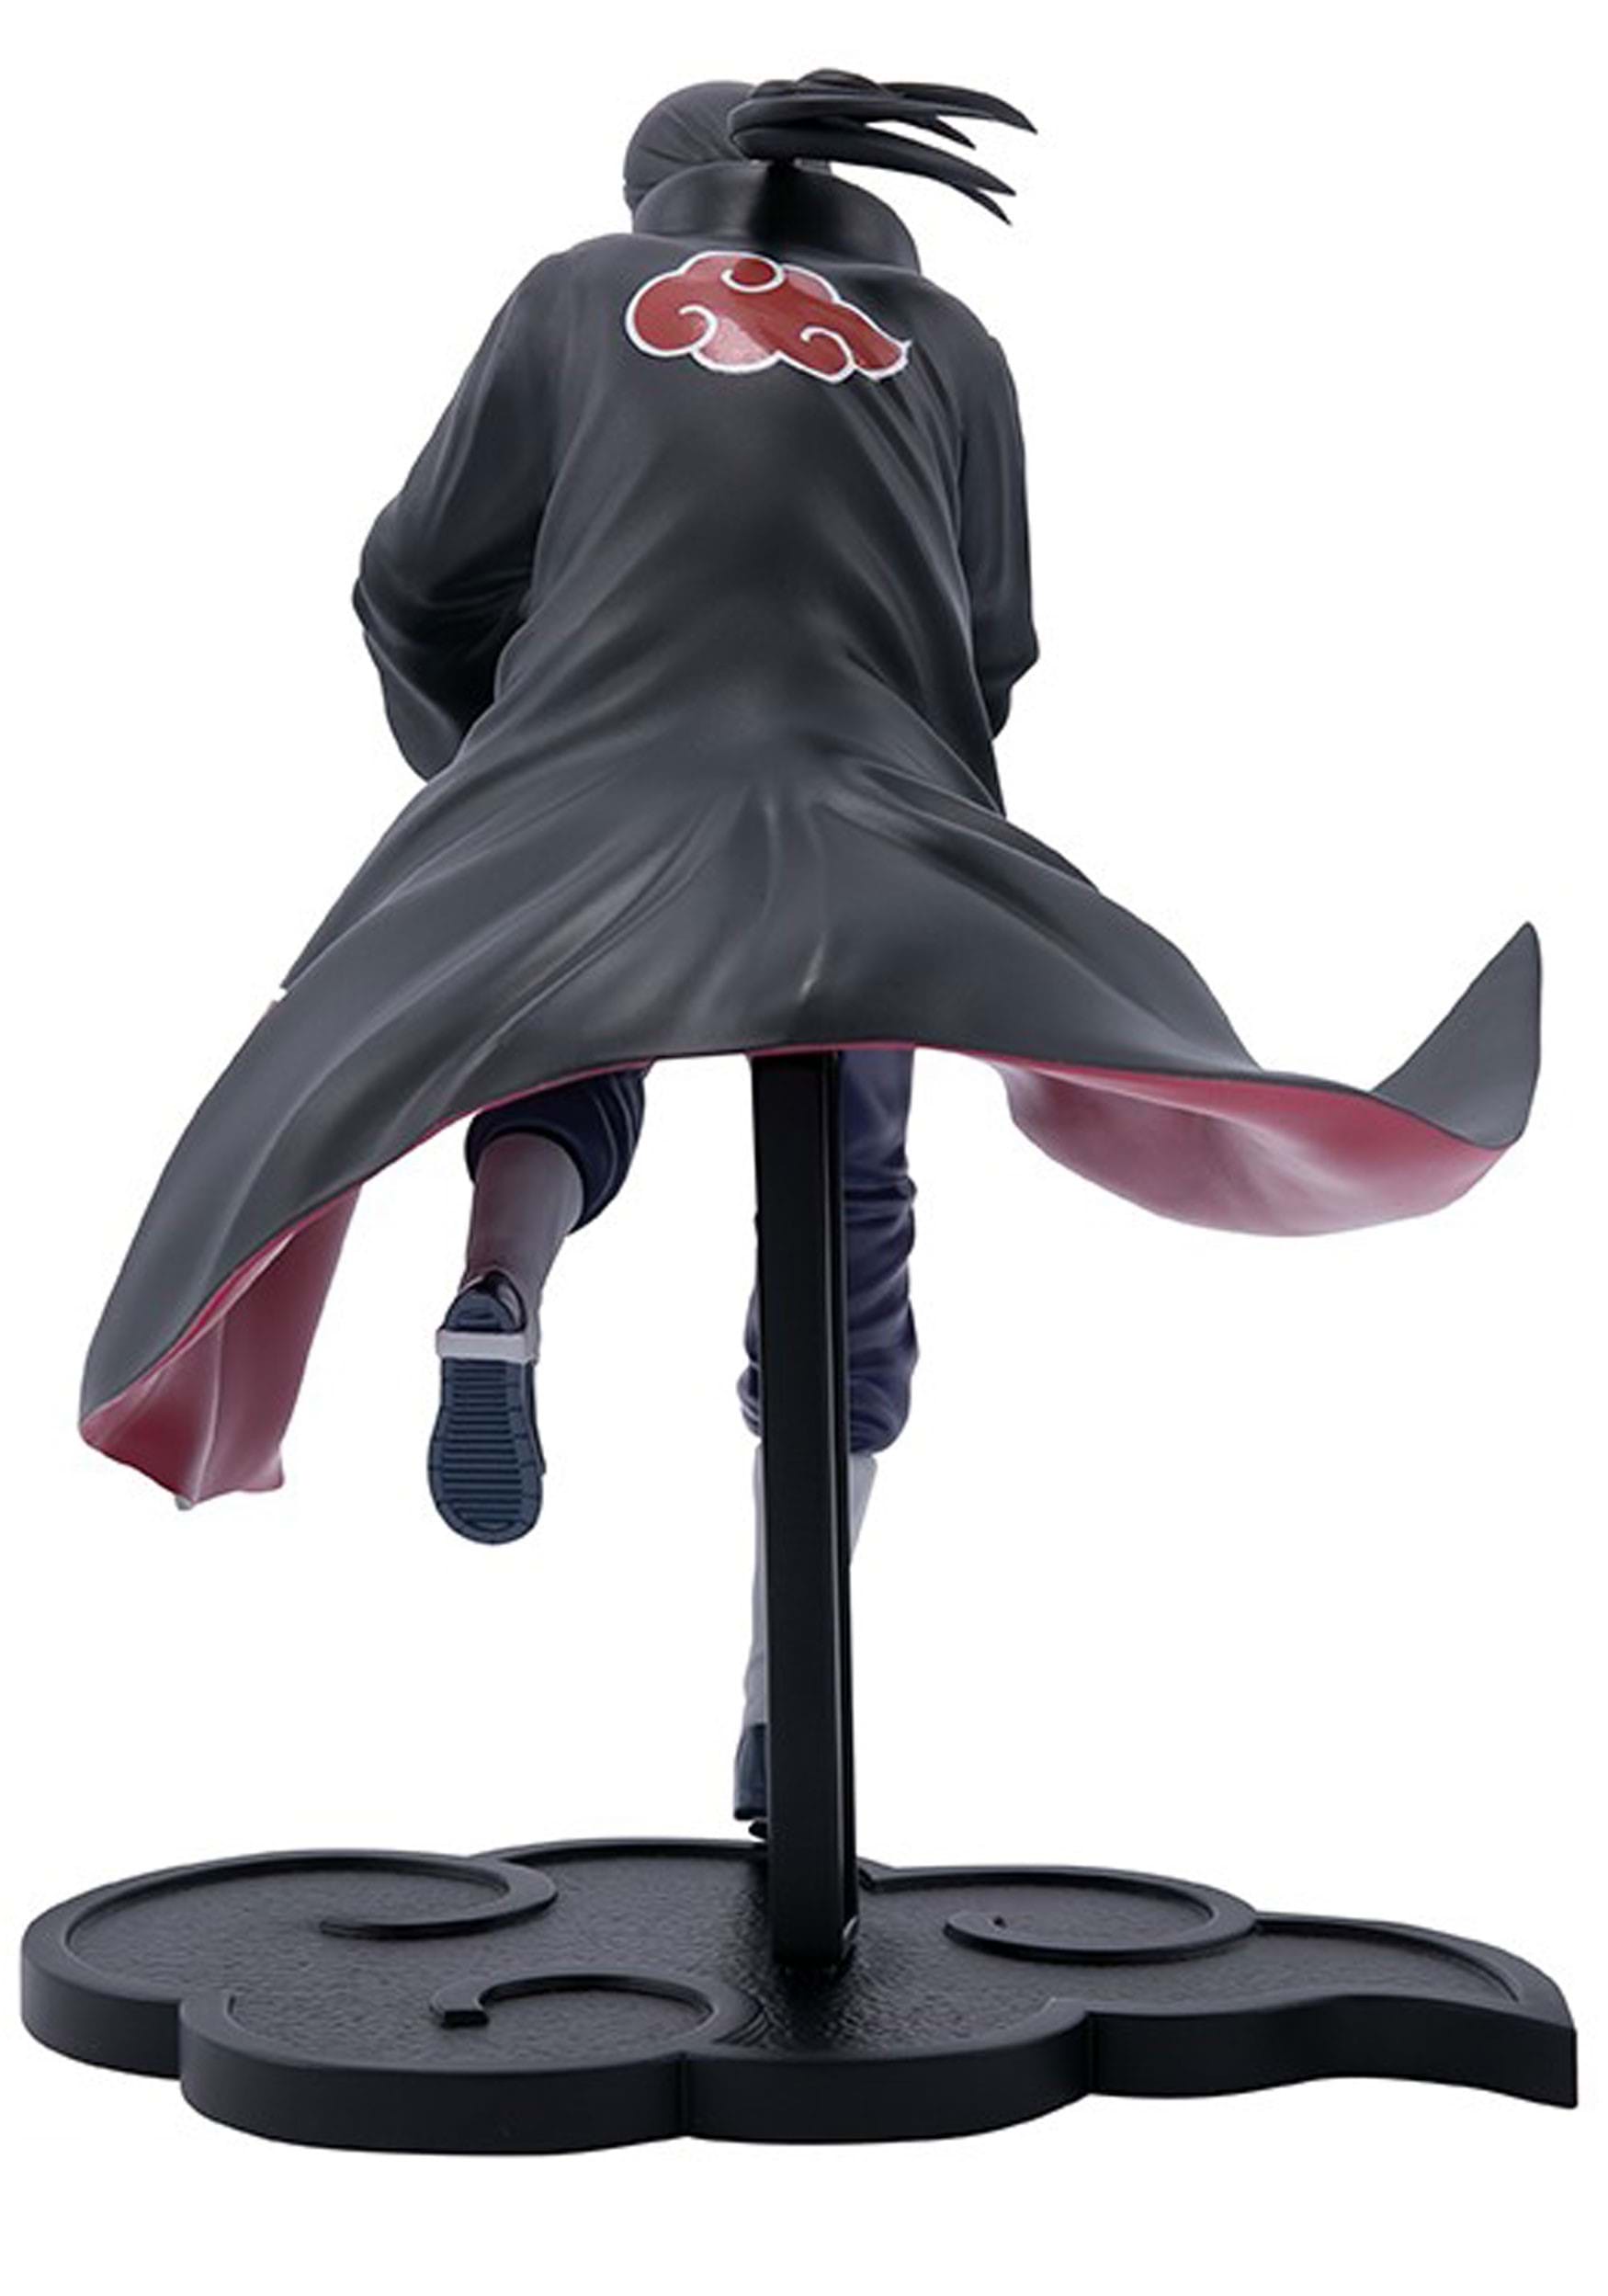 Naruto Shippuden - Itachi Uchiha SFC Figure